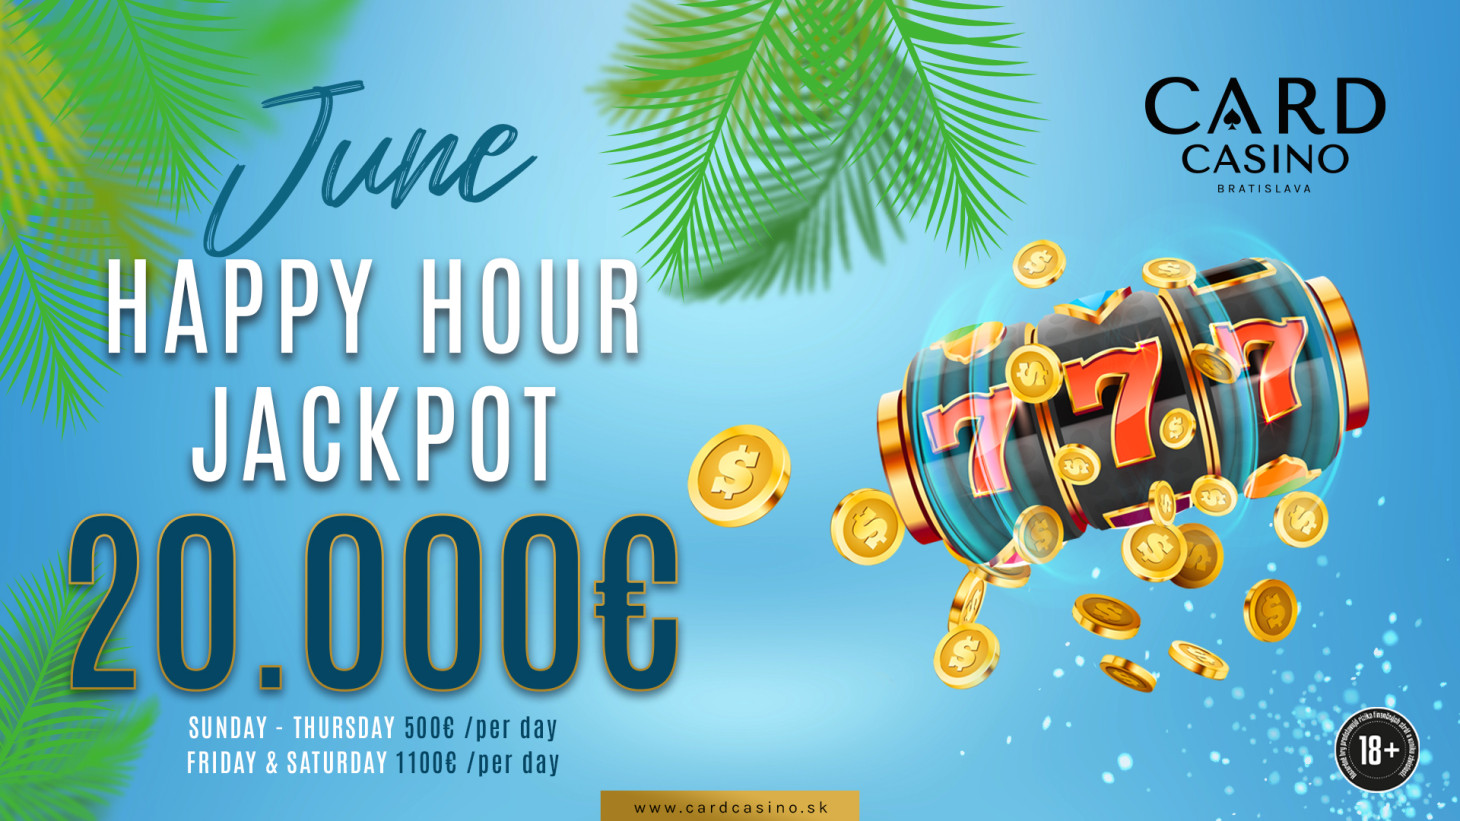 V júni rozdávame na Happy hour Jackpotoch 20.000€!